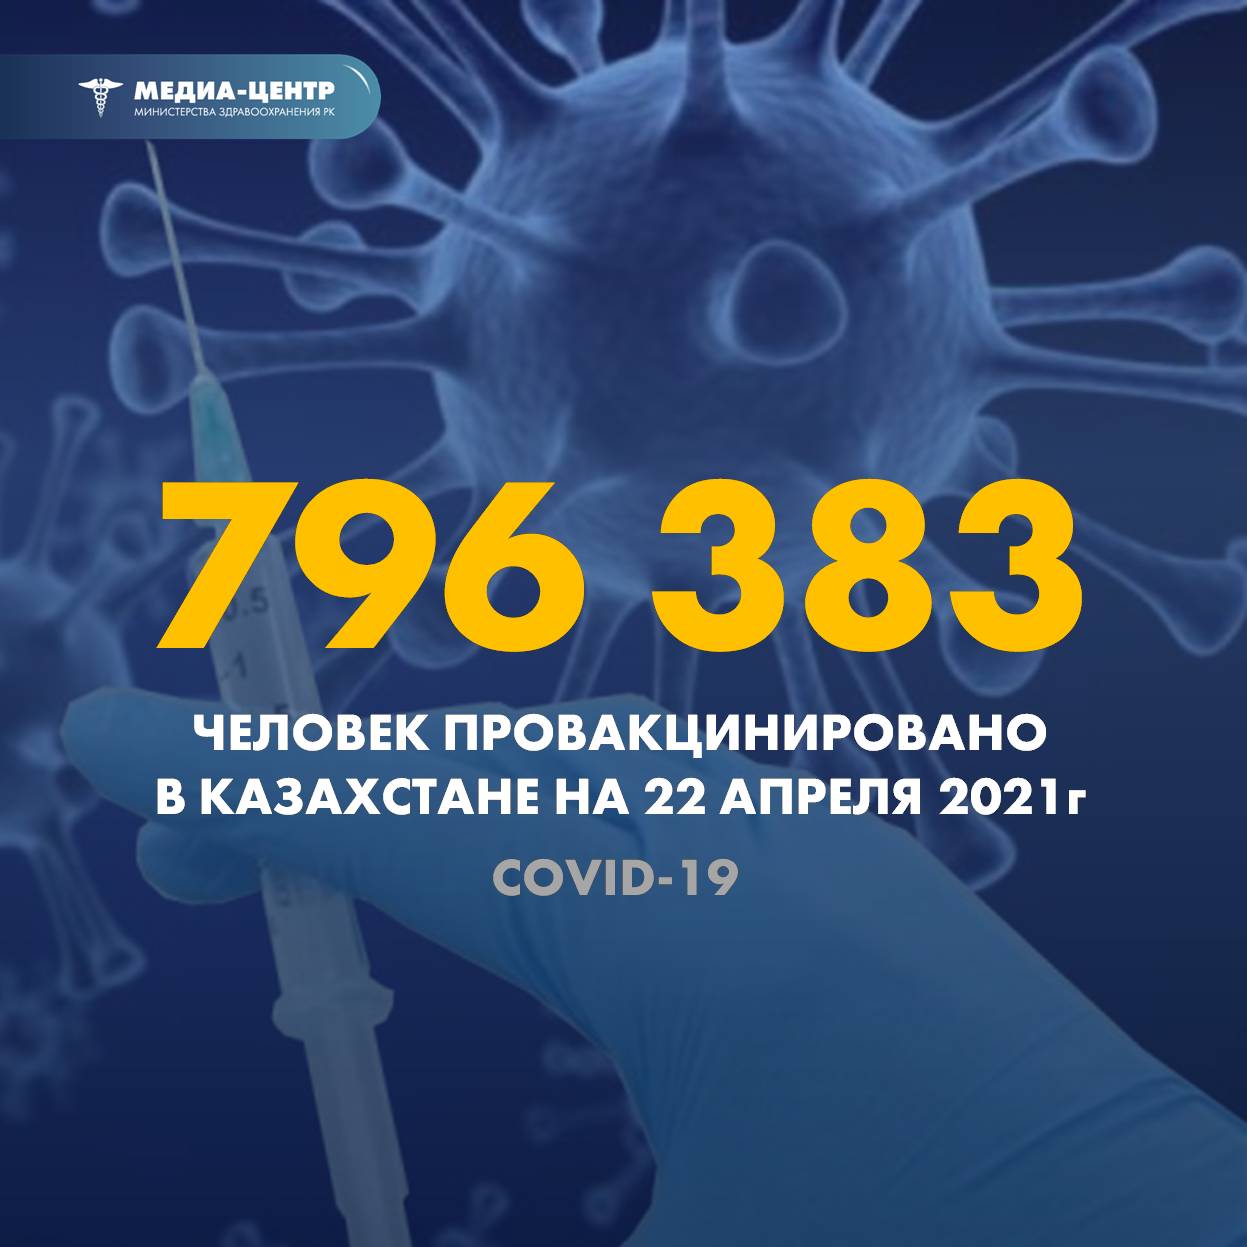 796 383 человек провакцинировано в Казахстане на 22 апреля 2021 г